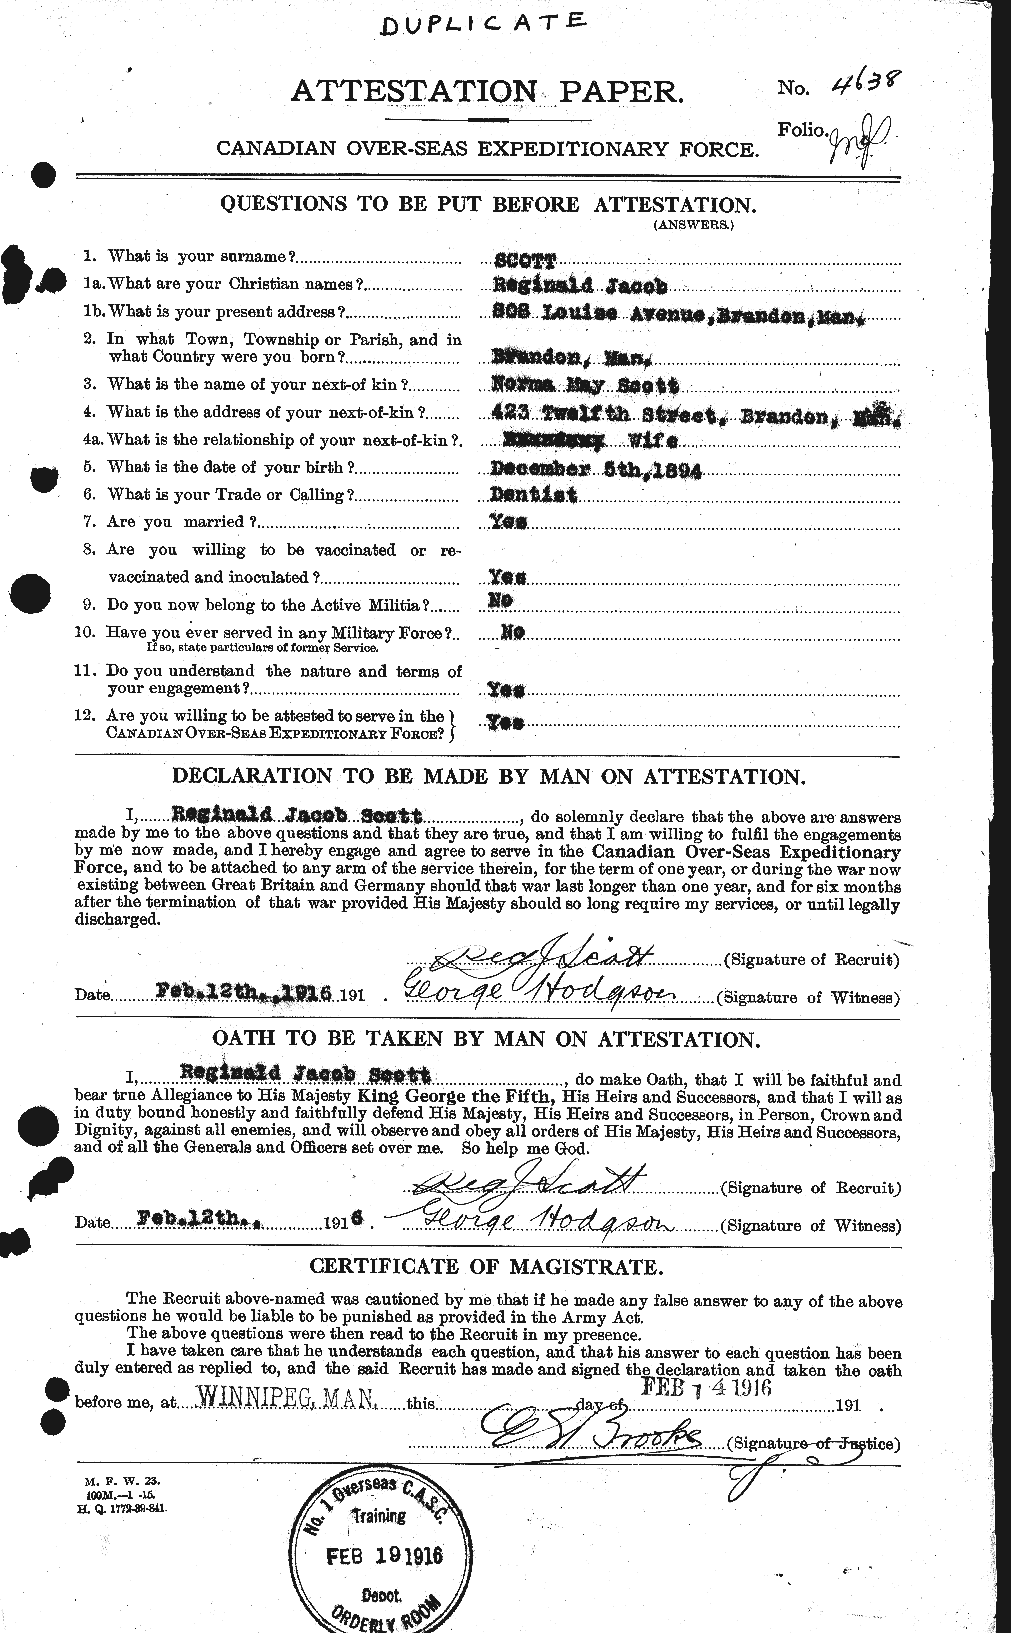 Dossiers du Personnel de la Première Guerre mondiale - CEC 090193a